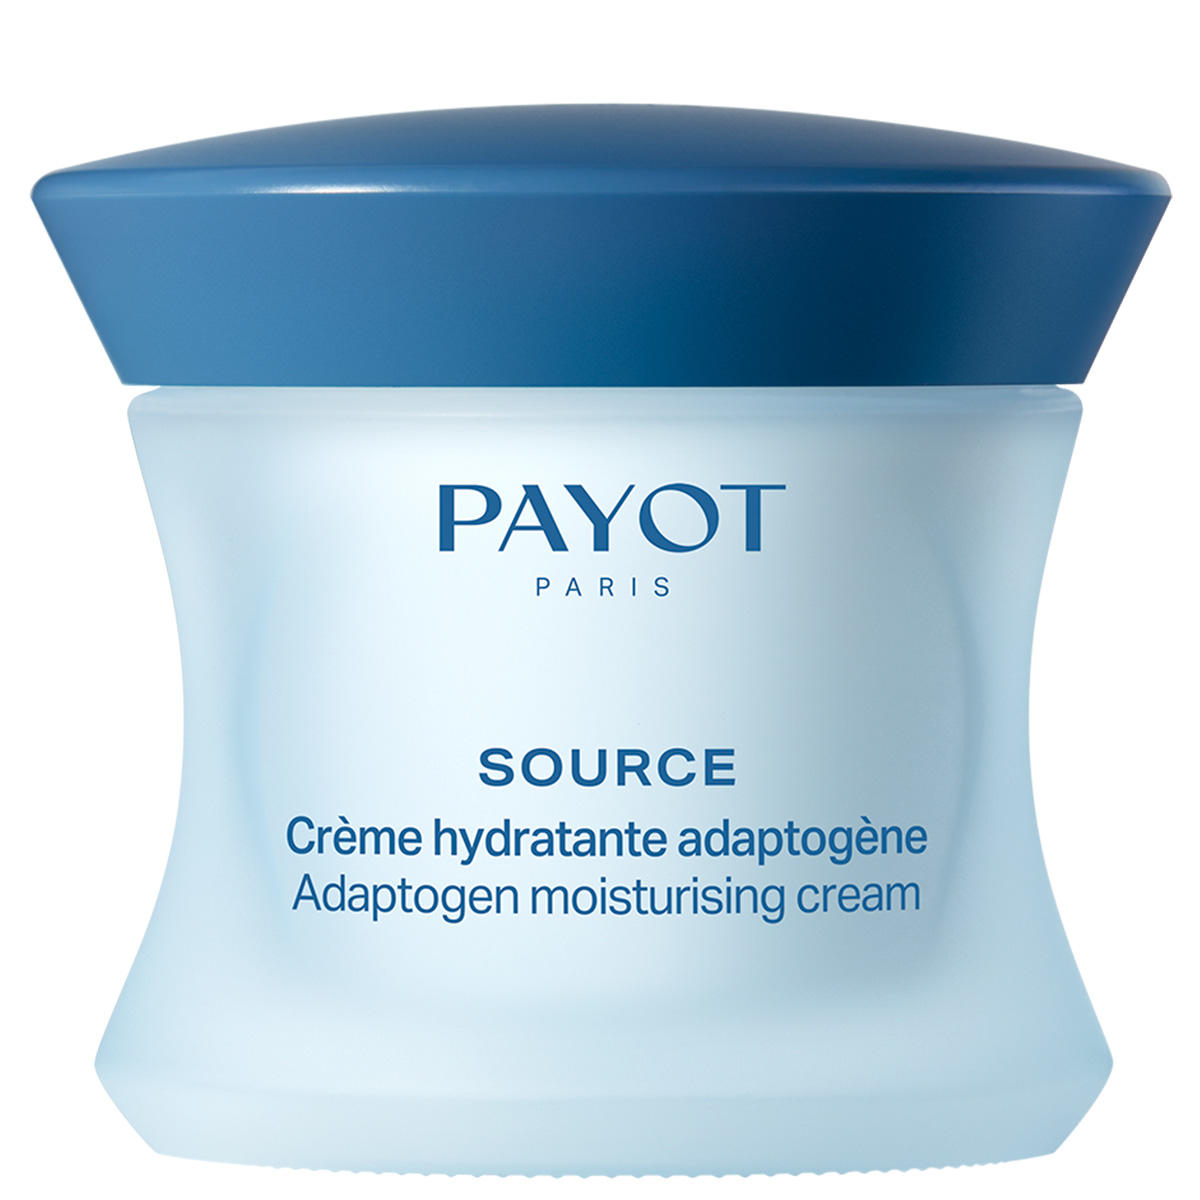 Payot Source Crème hydratante adaptogène 50 ml - 1